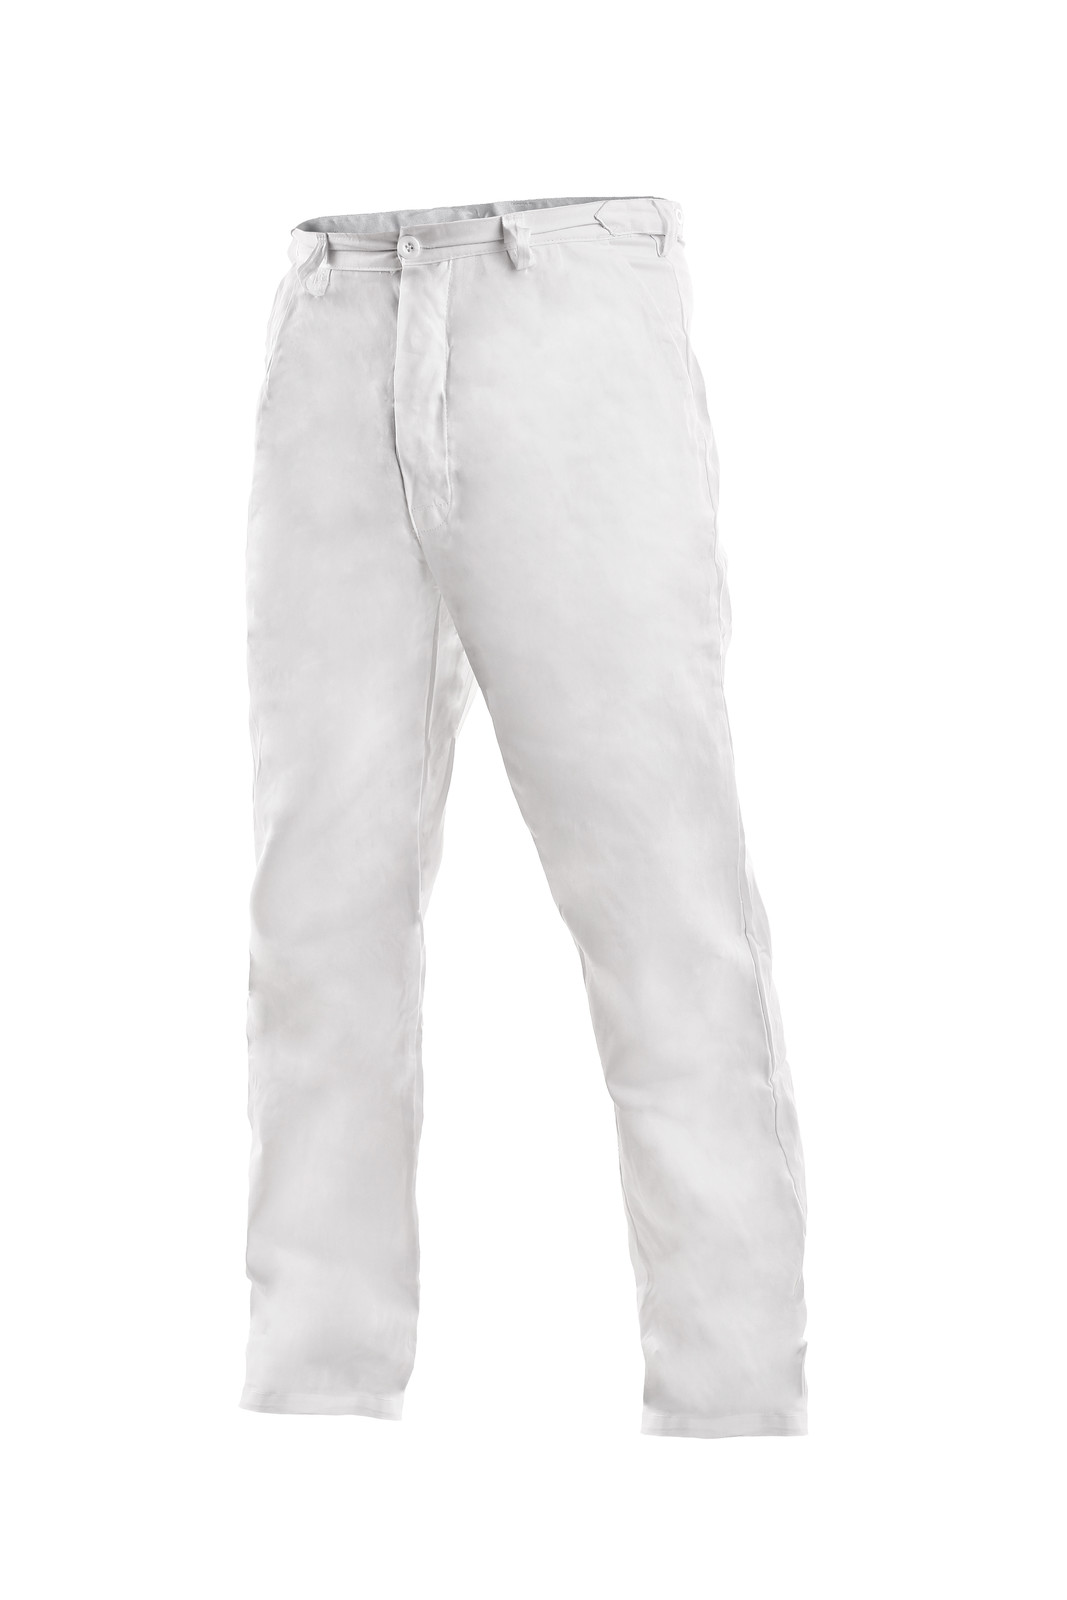 Pánske biele bavlnené nohavice Artur - veľkosť: 64, farba: biela